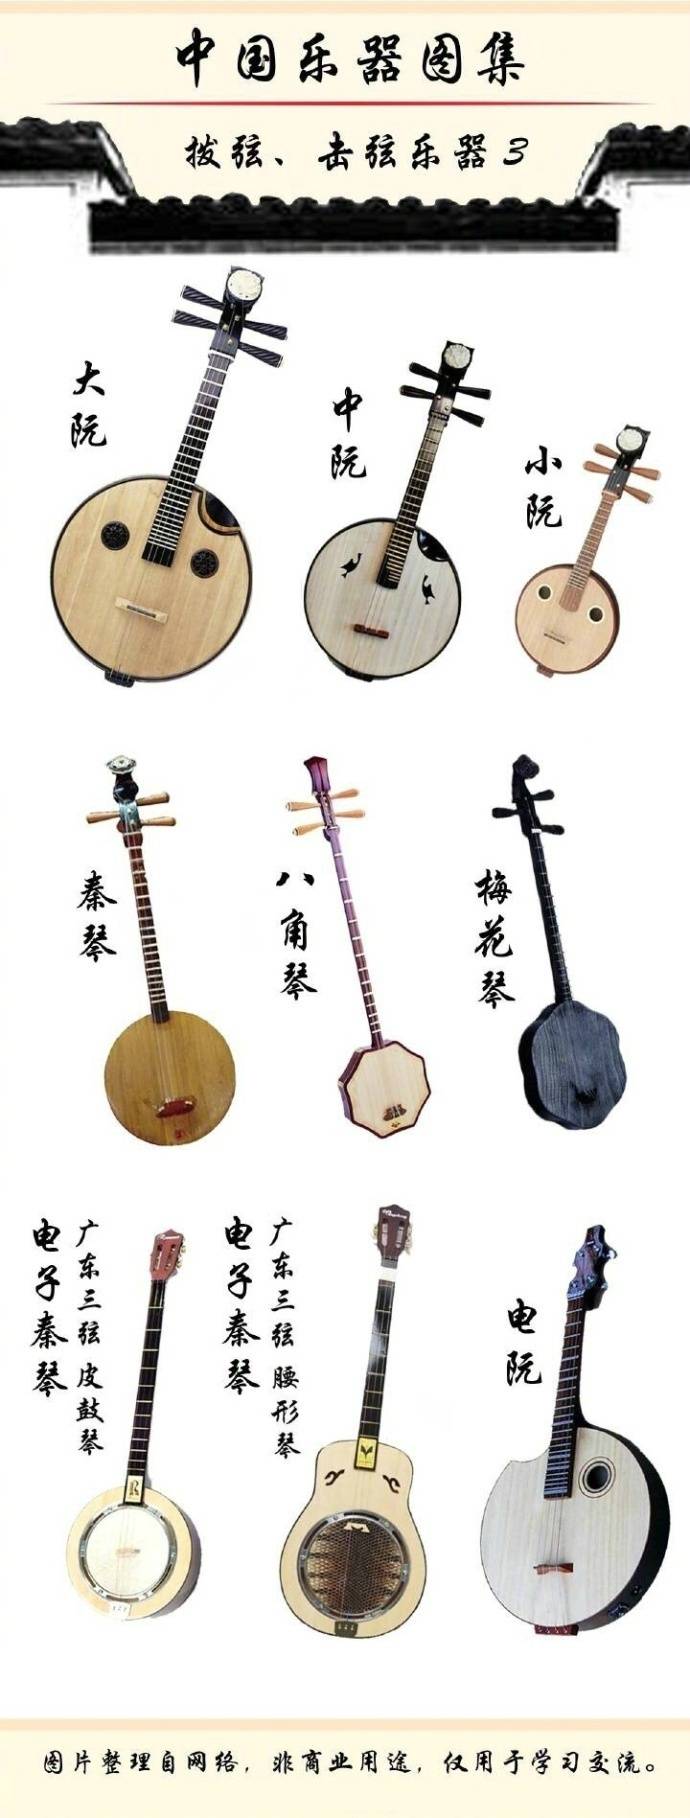 中国古代乐器图集